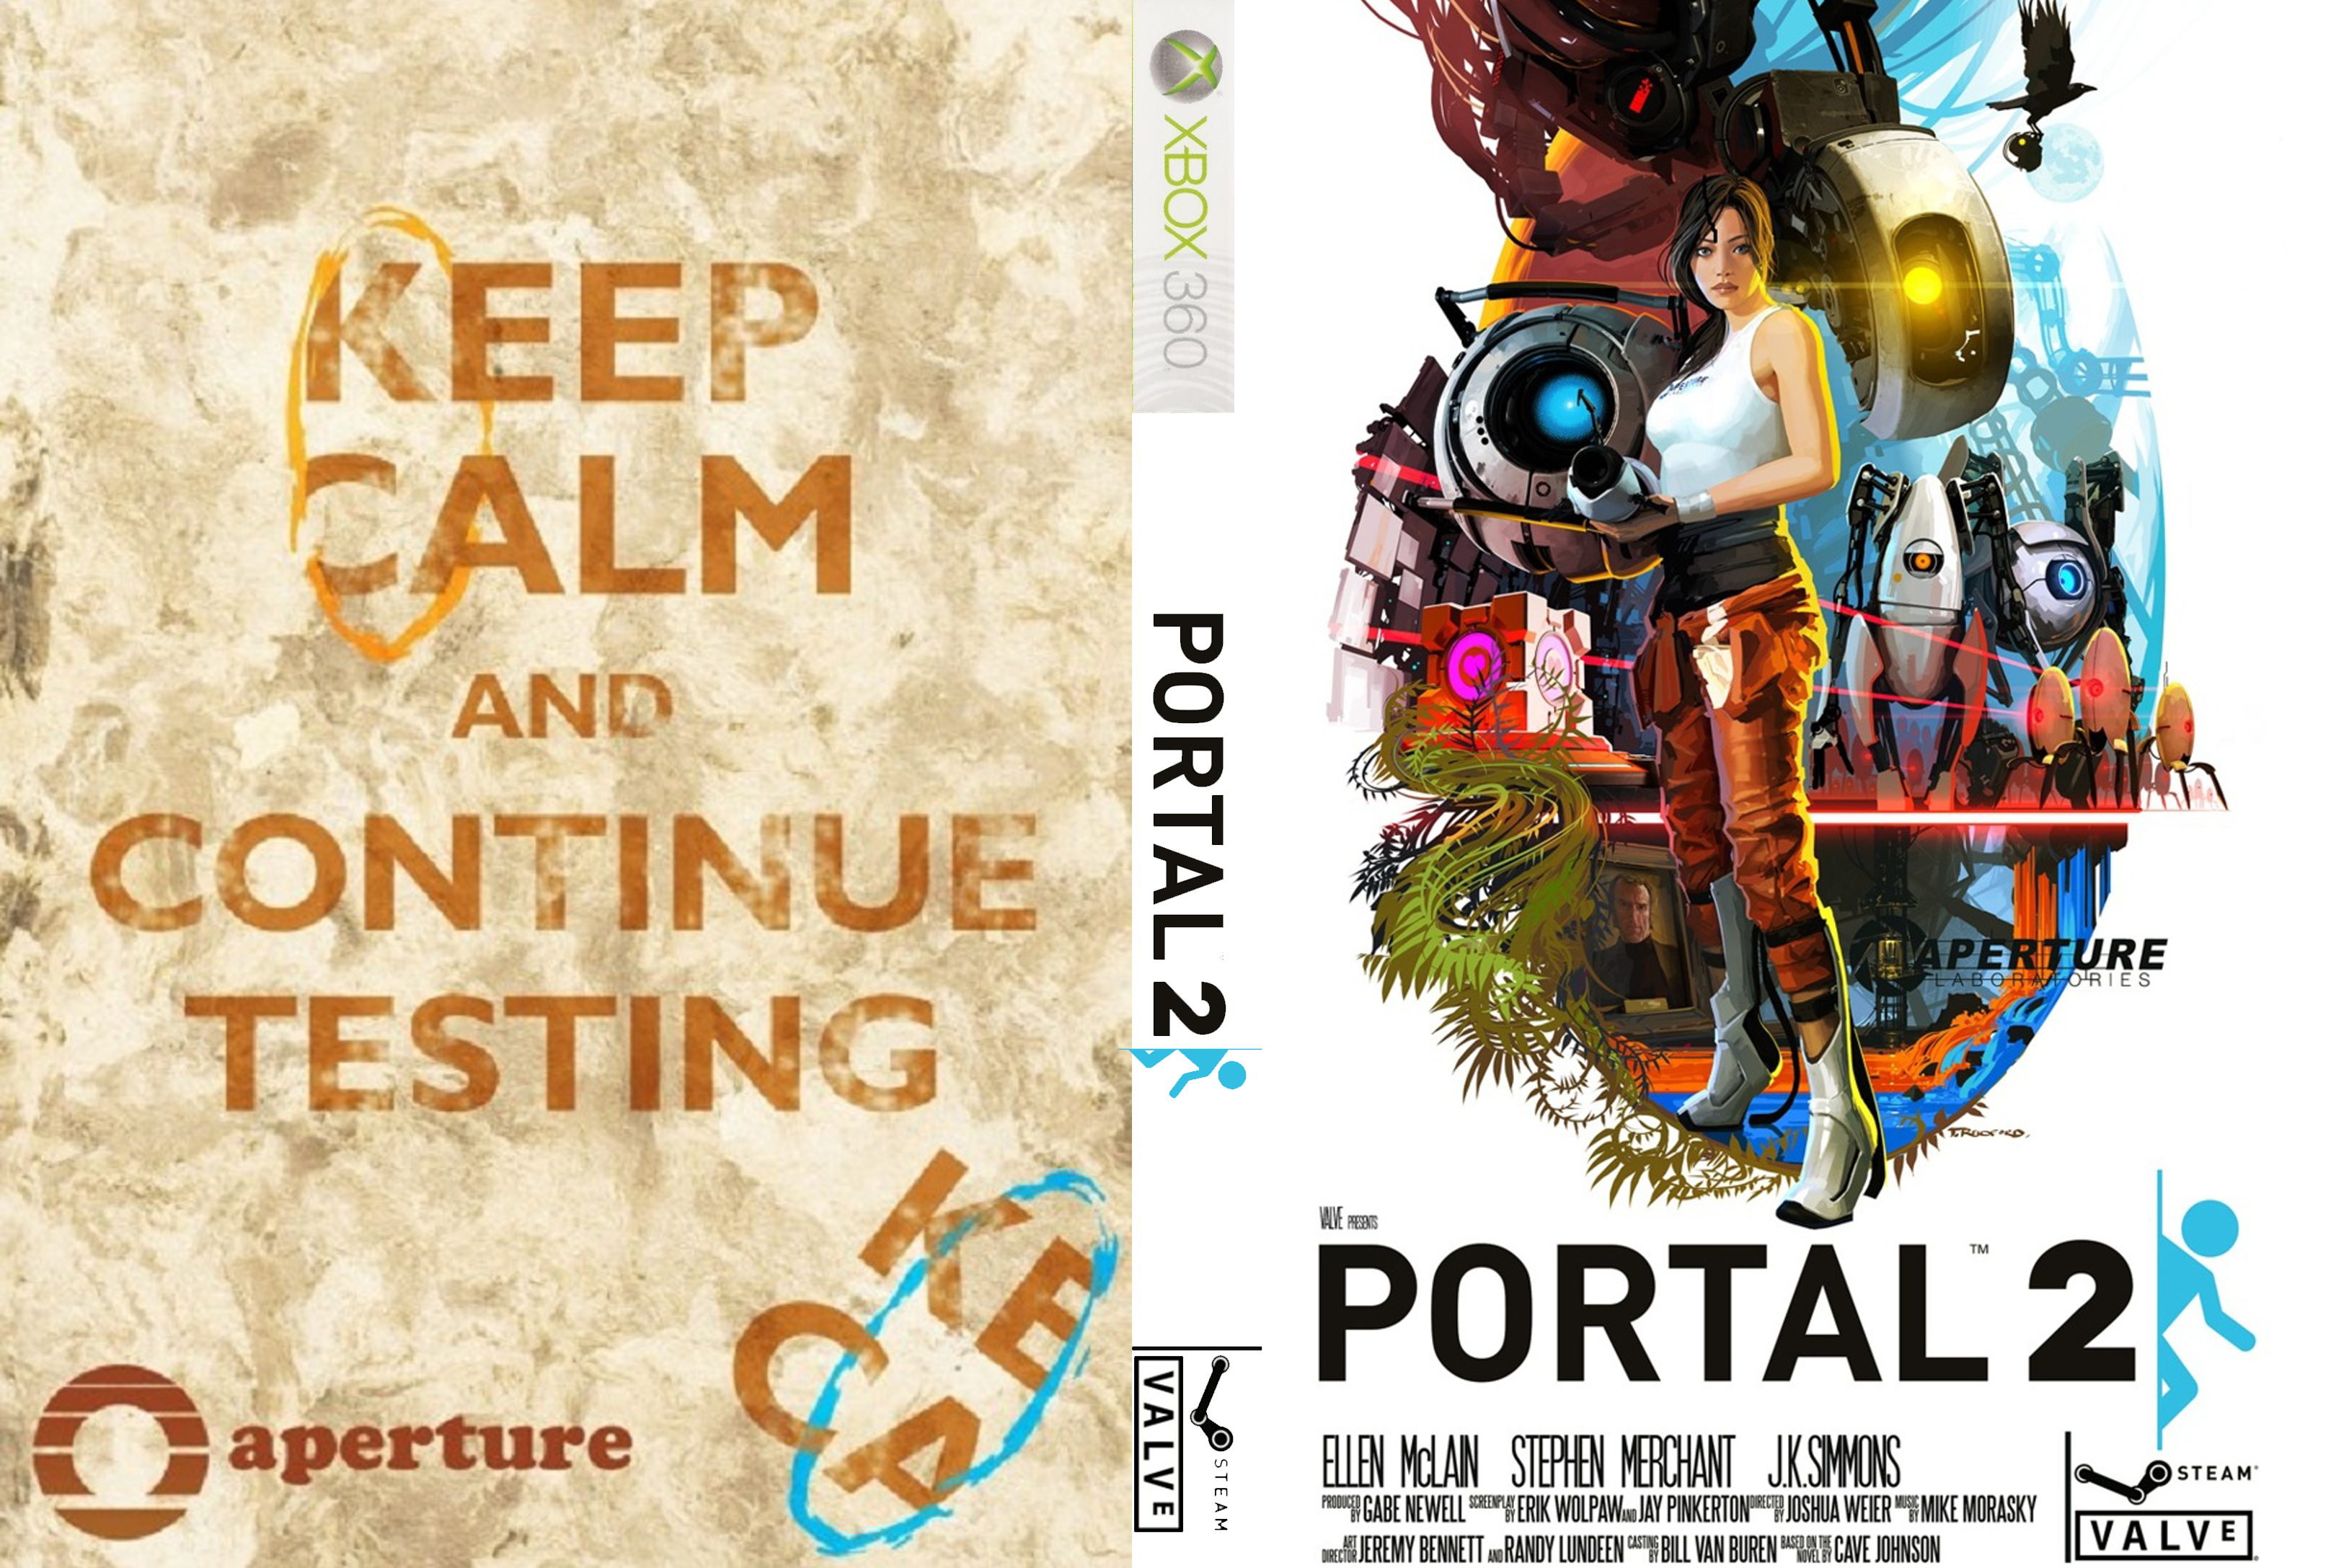 Portal 2 no dvd фото 27